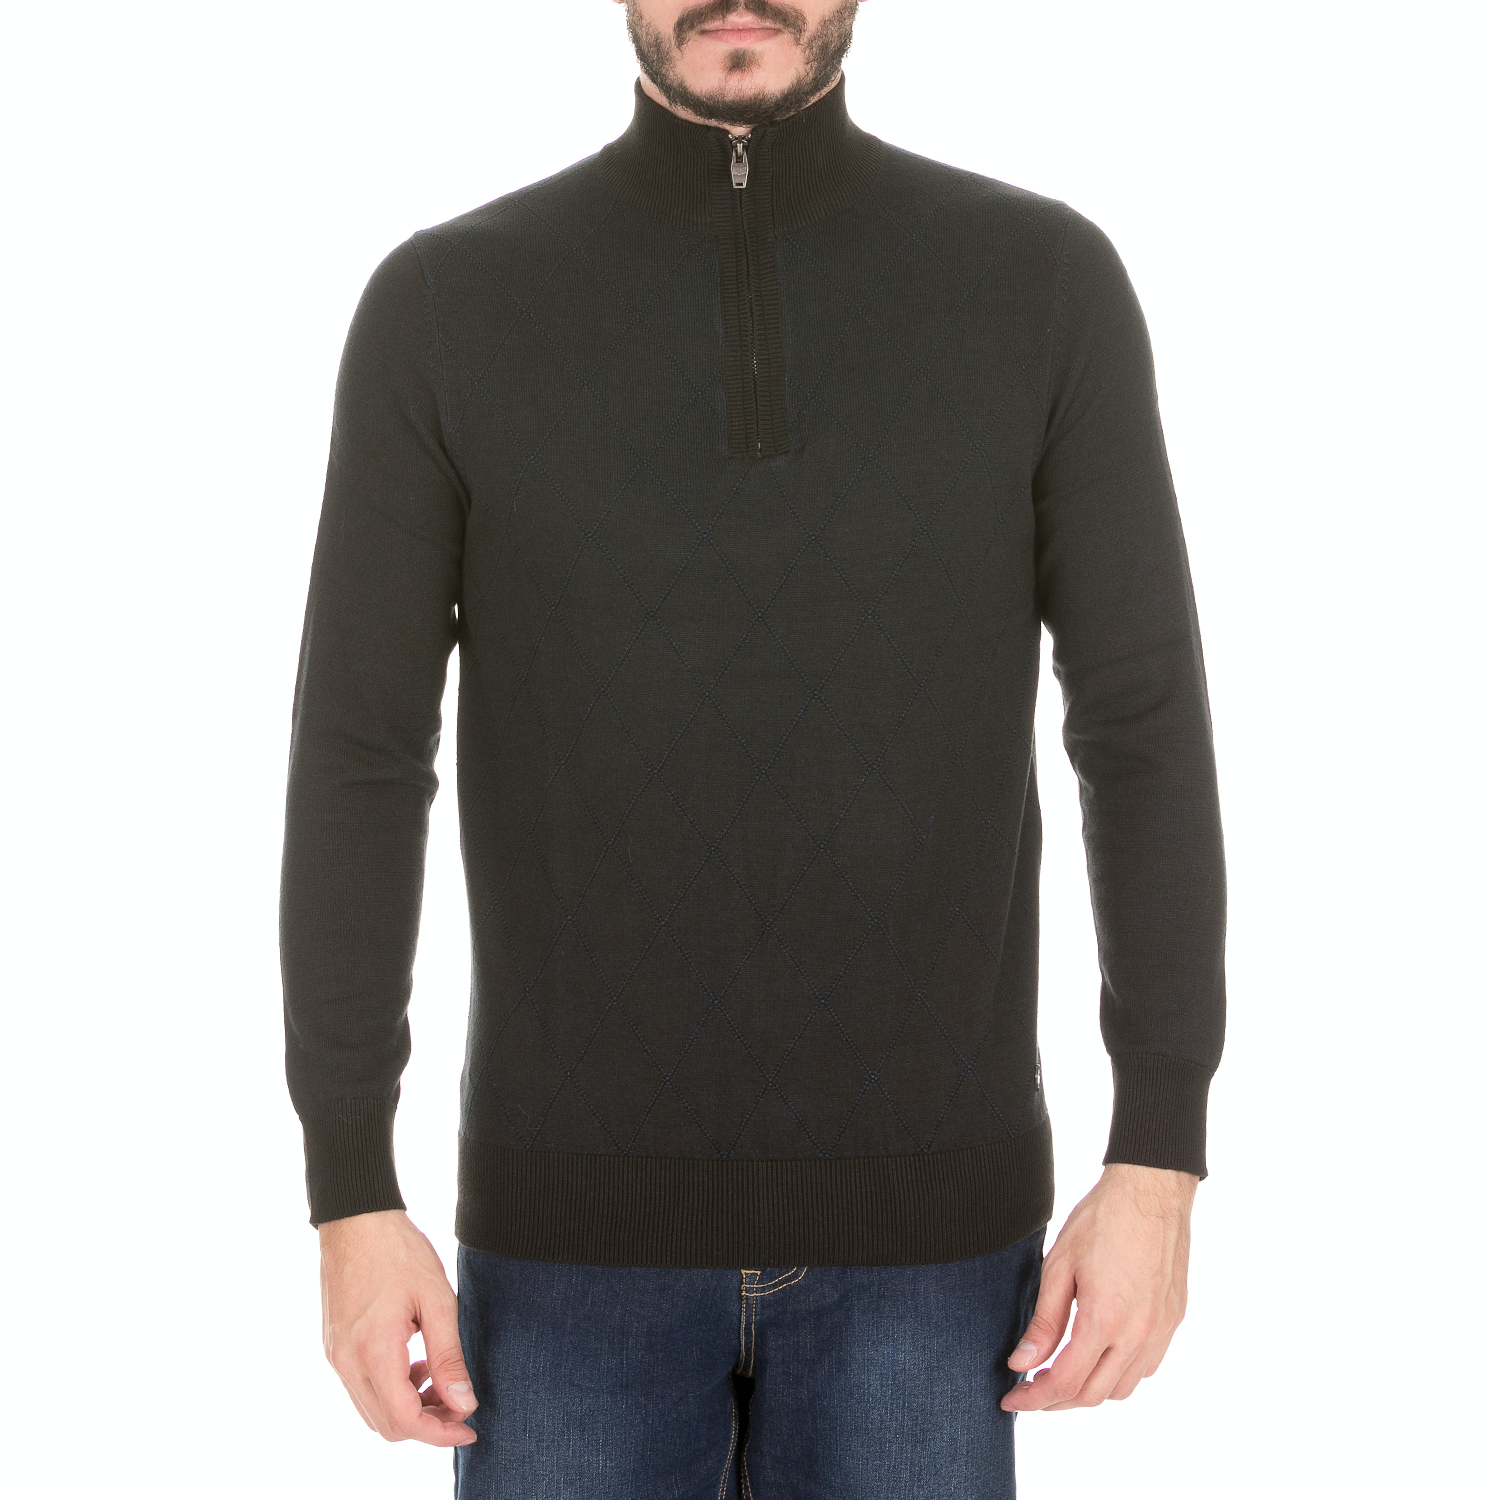 Ανδρικά/Ρούχα/Πλεκτά-Ζακέτες/Πουλόβερ GREENWOOD - Ανδρική πλεκτή μπλούζα GREENWOOD μαύρη